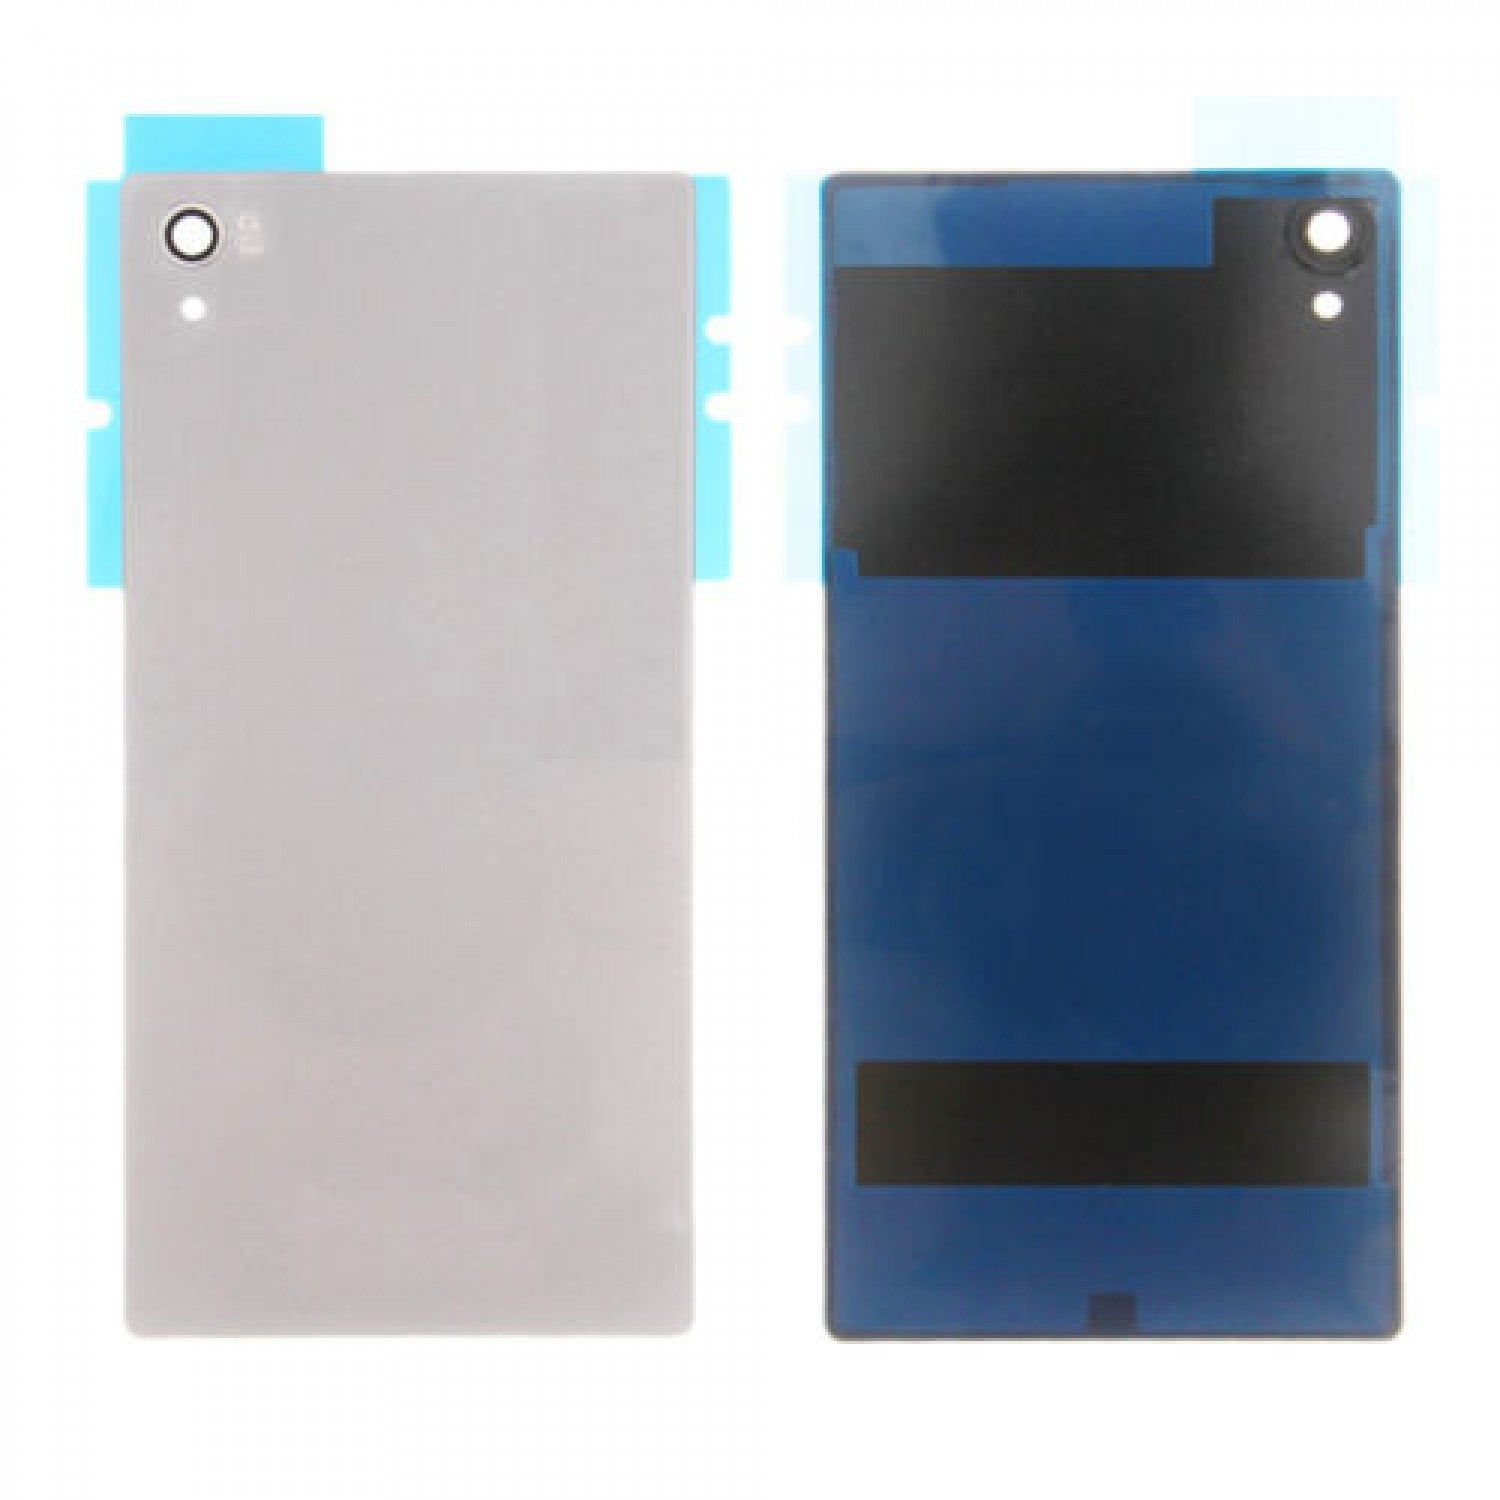 Back Battery Cover For Xperia Z5 Premium E6833 E6853 [Pro-Mobile]